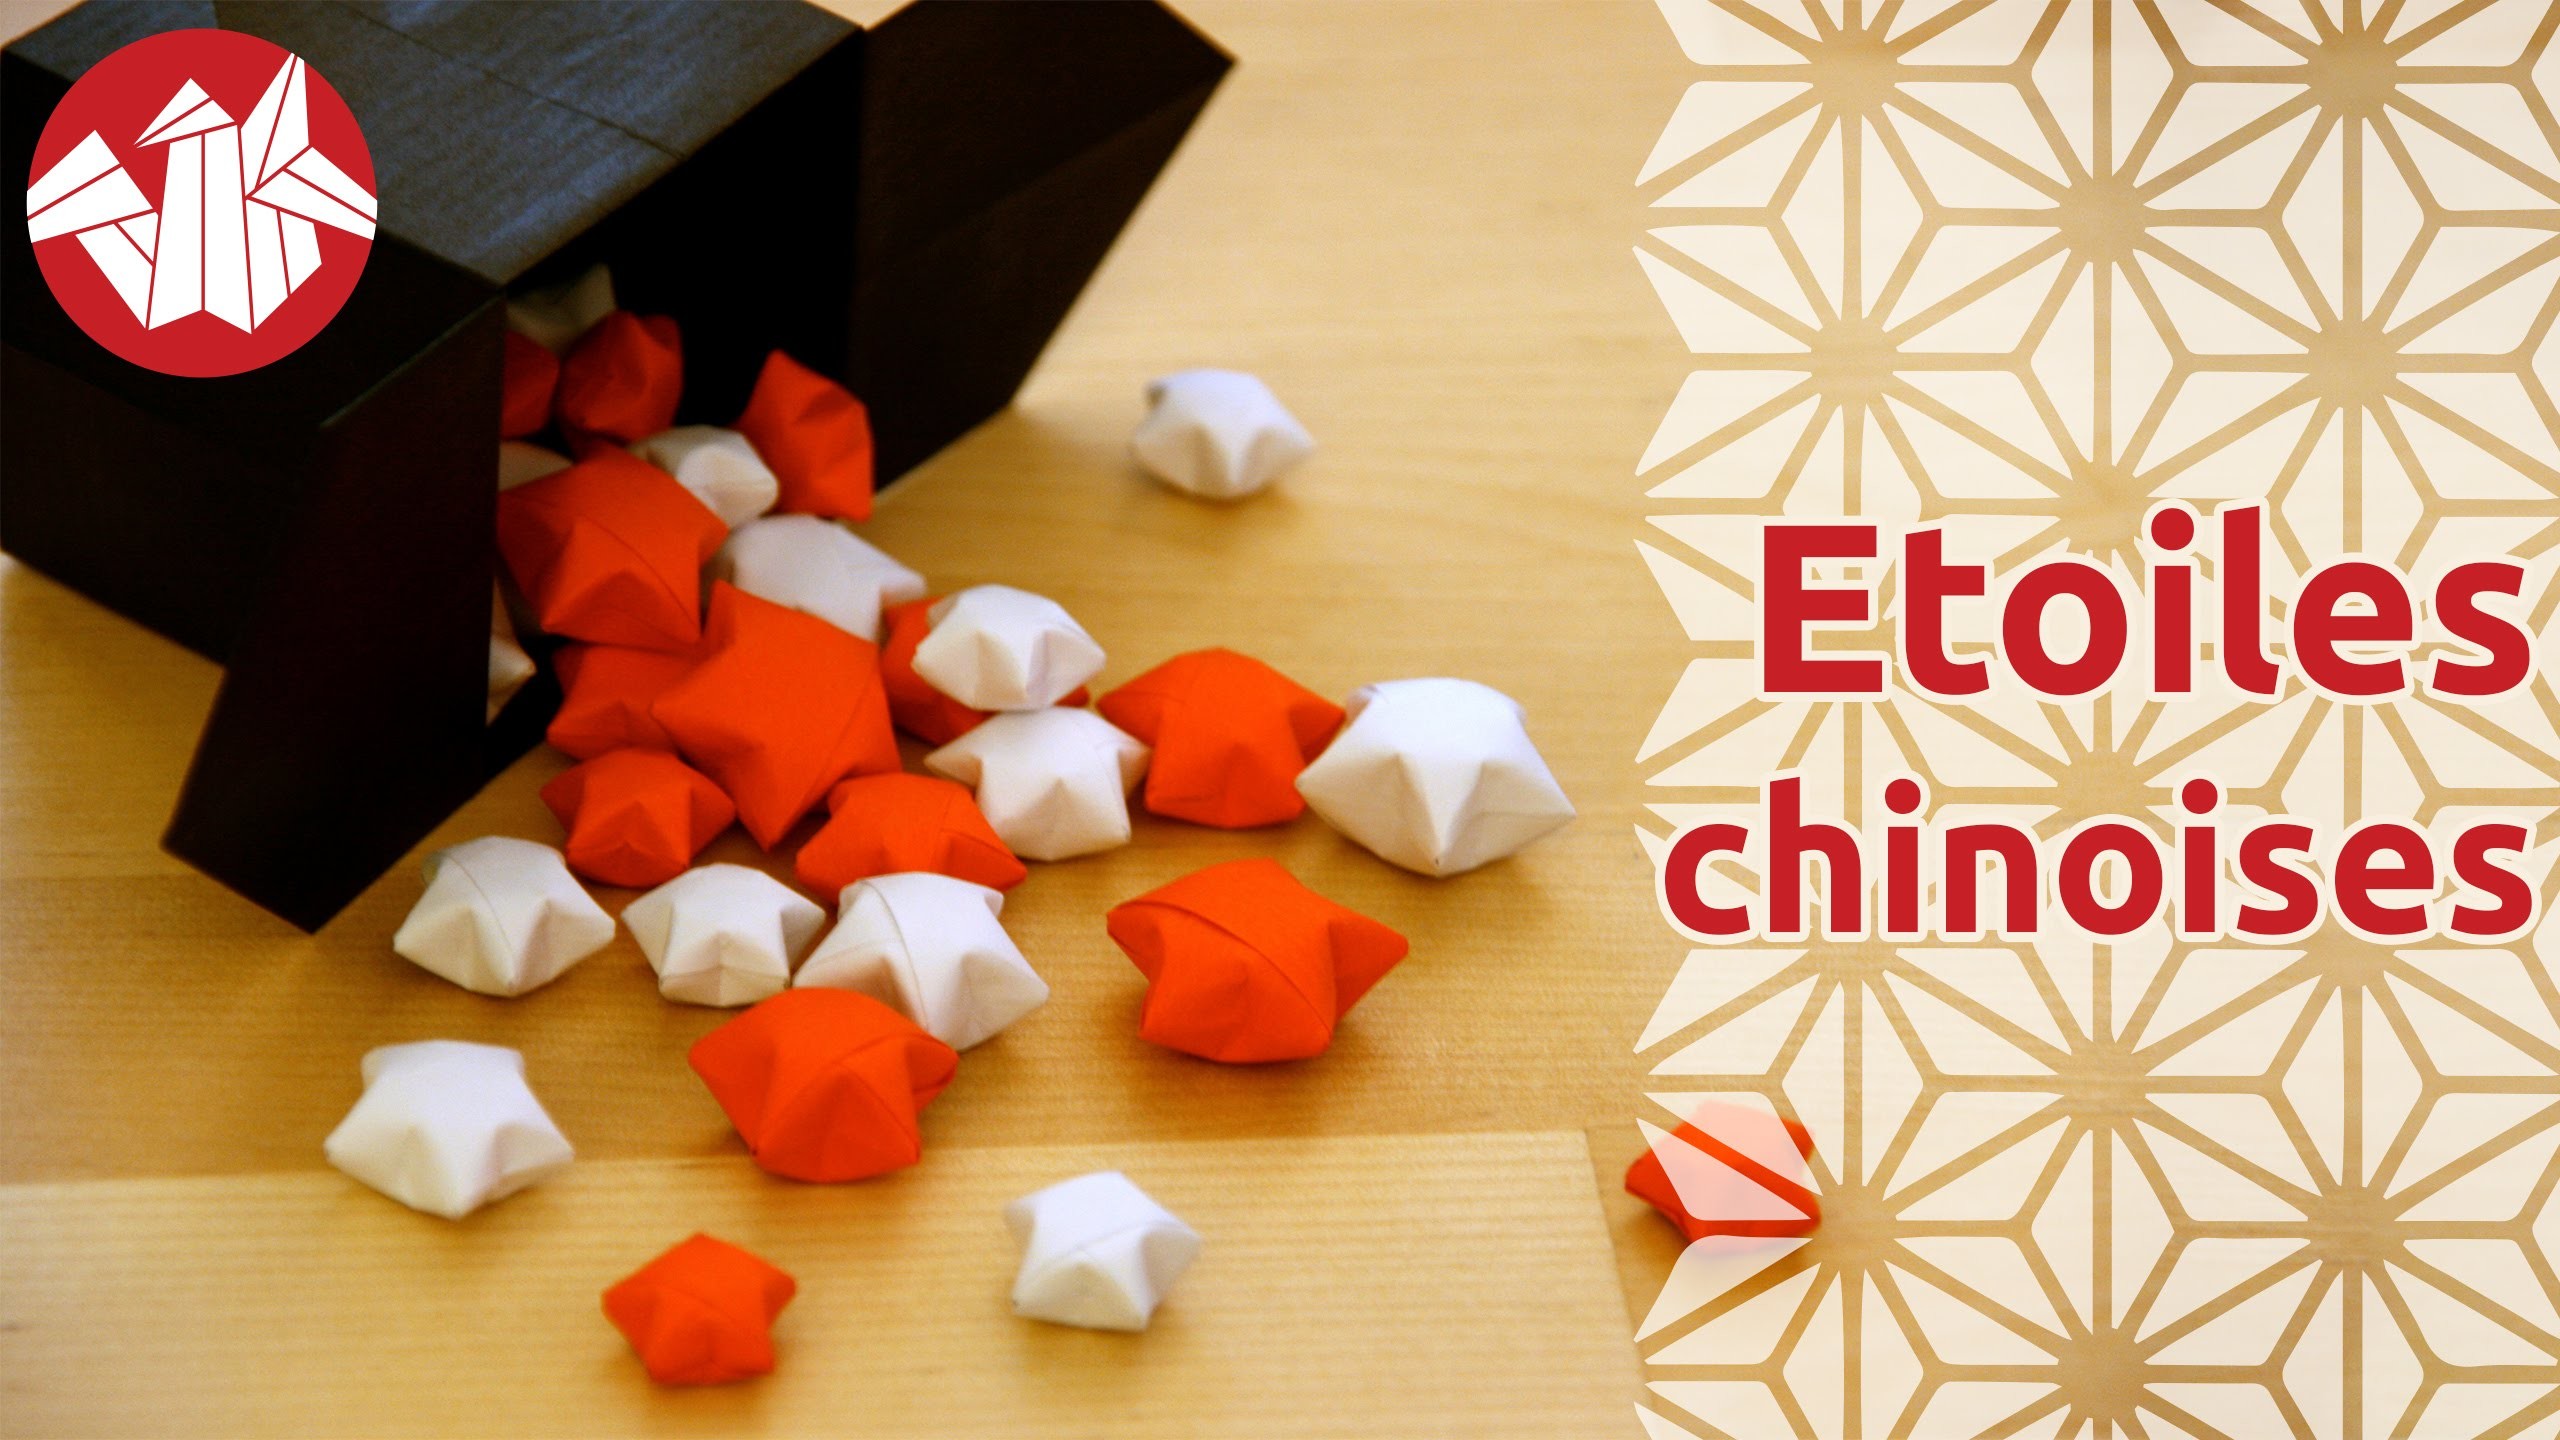 Origami - Etoiles chinoises du bonheur - Chinese Lucky Stars (HD) [Senbazuru]